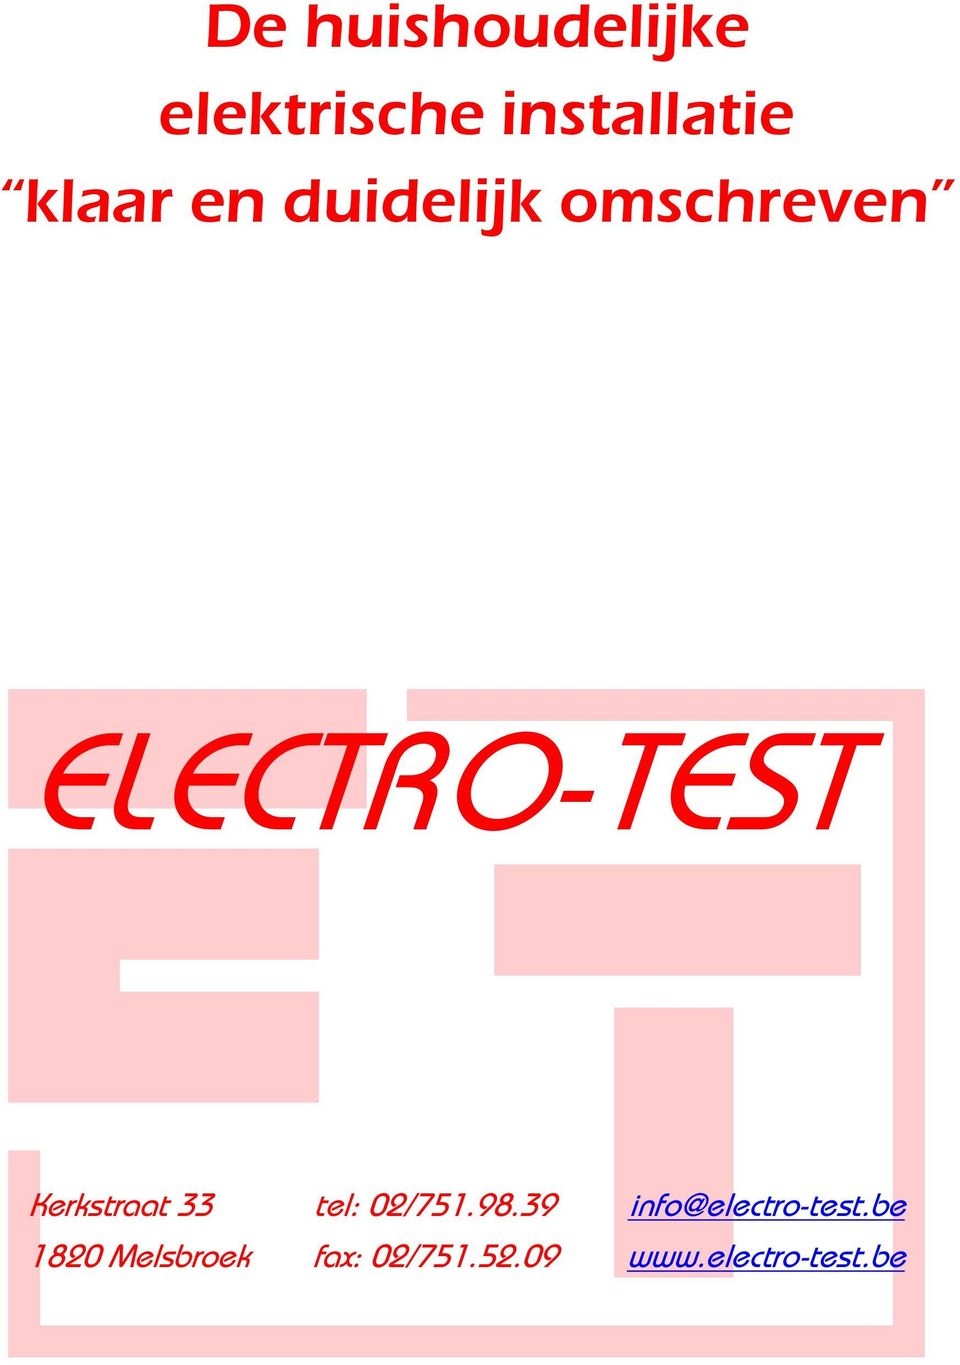 33 tel: 02/751.98.39 info@electro-test.